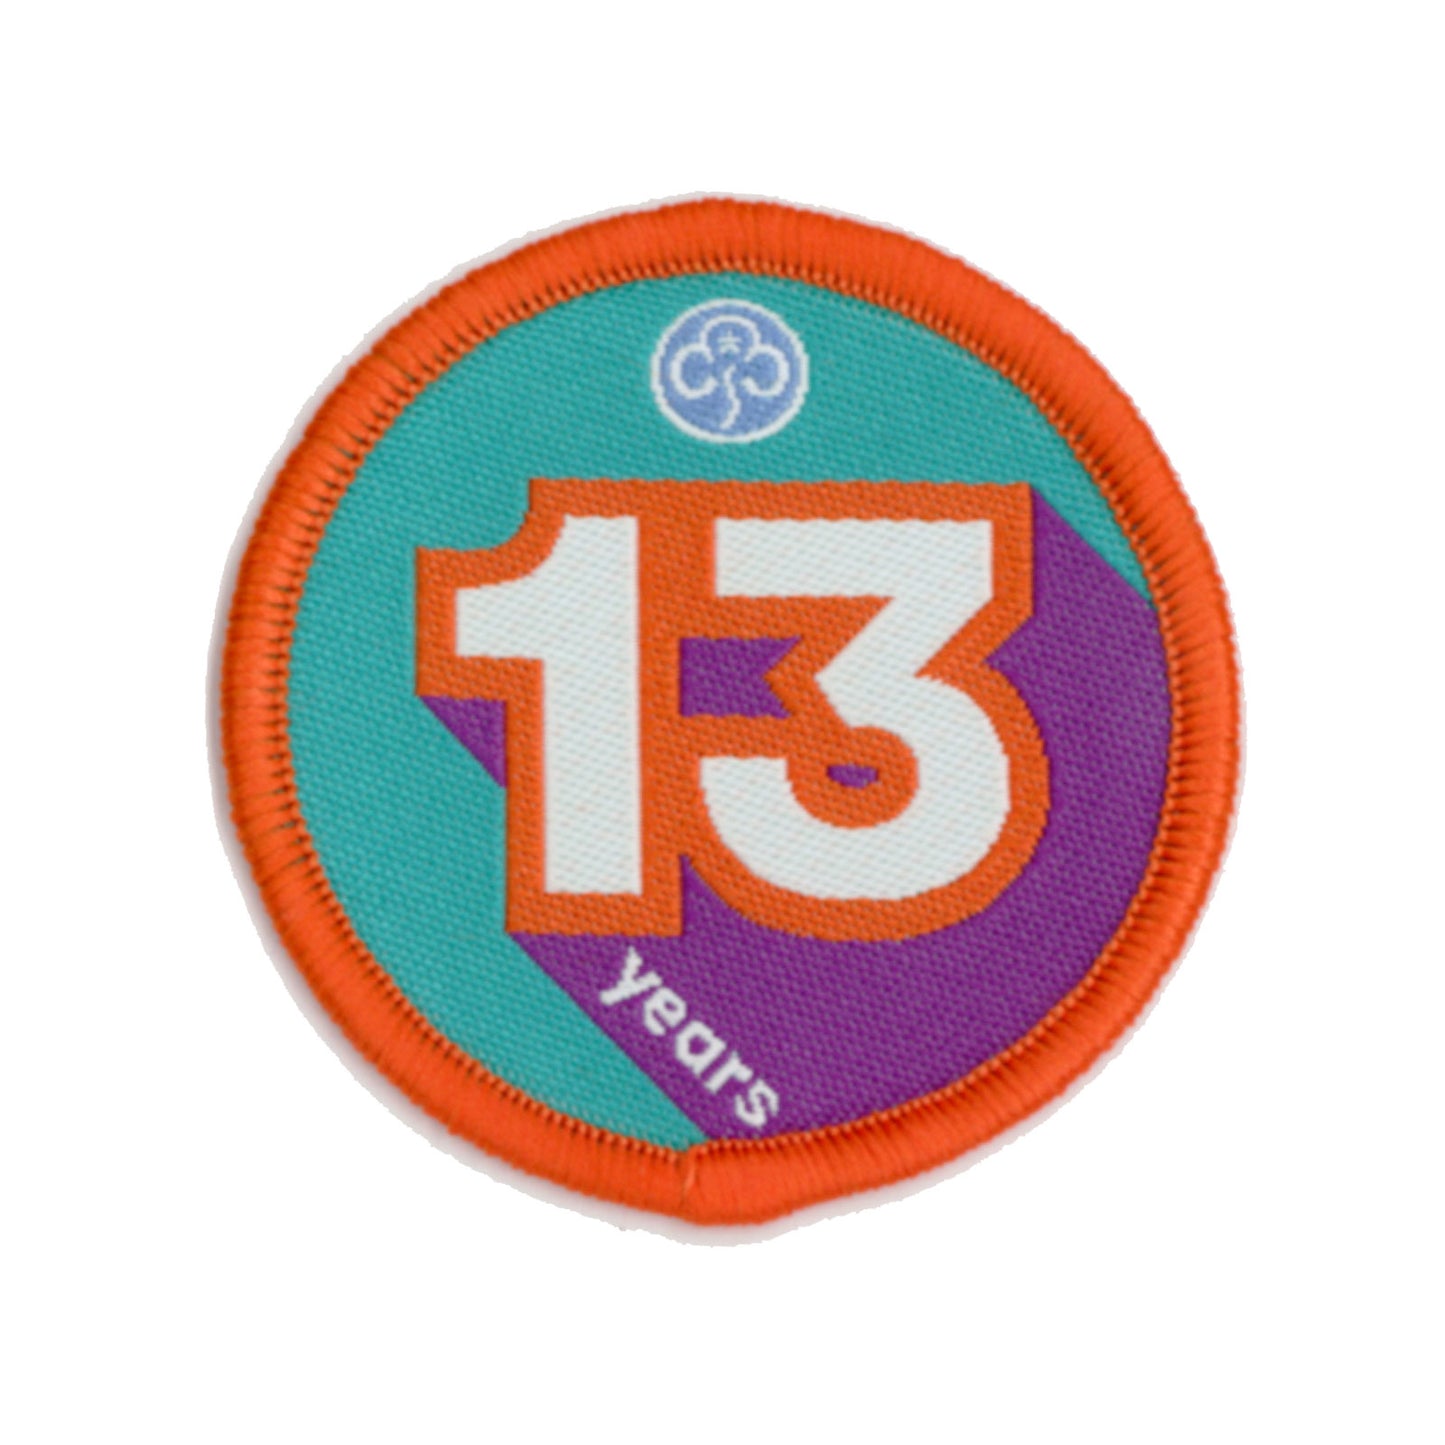 Anniversary Year 13 Woven Badge